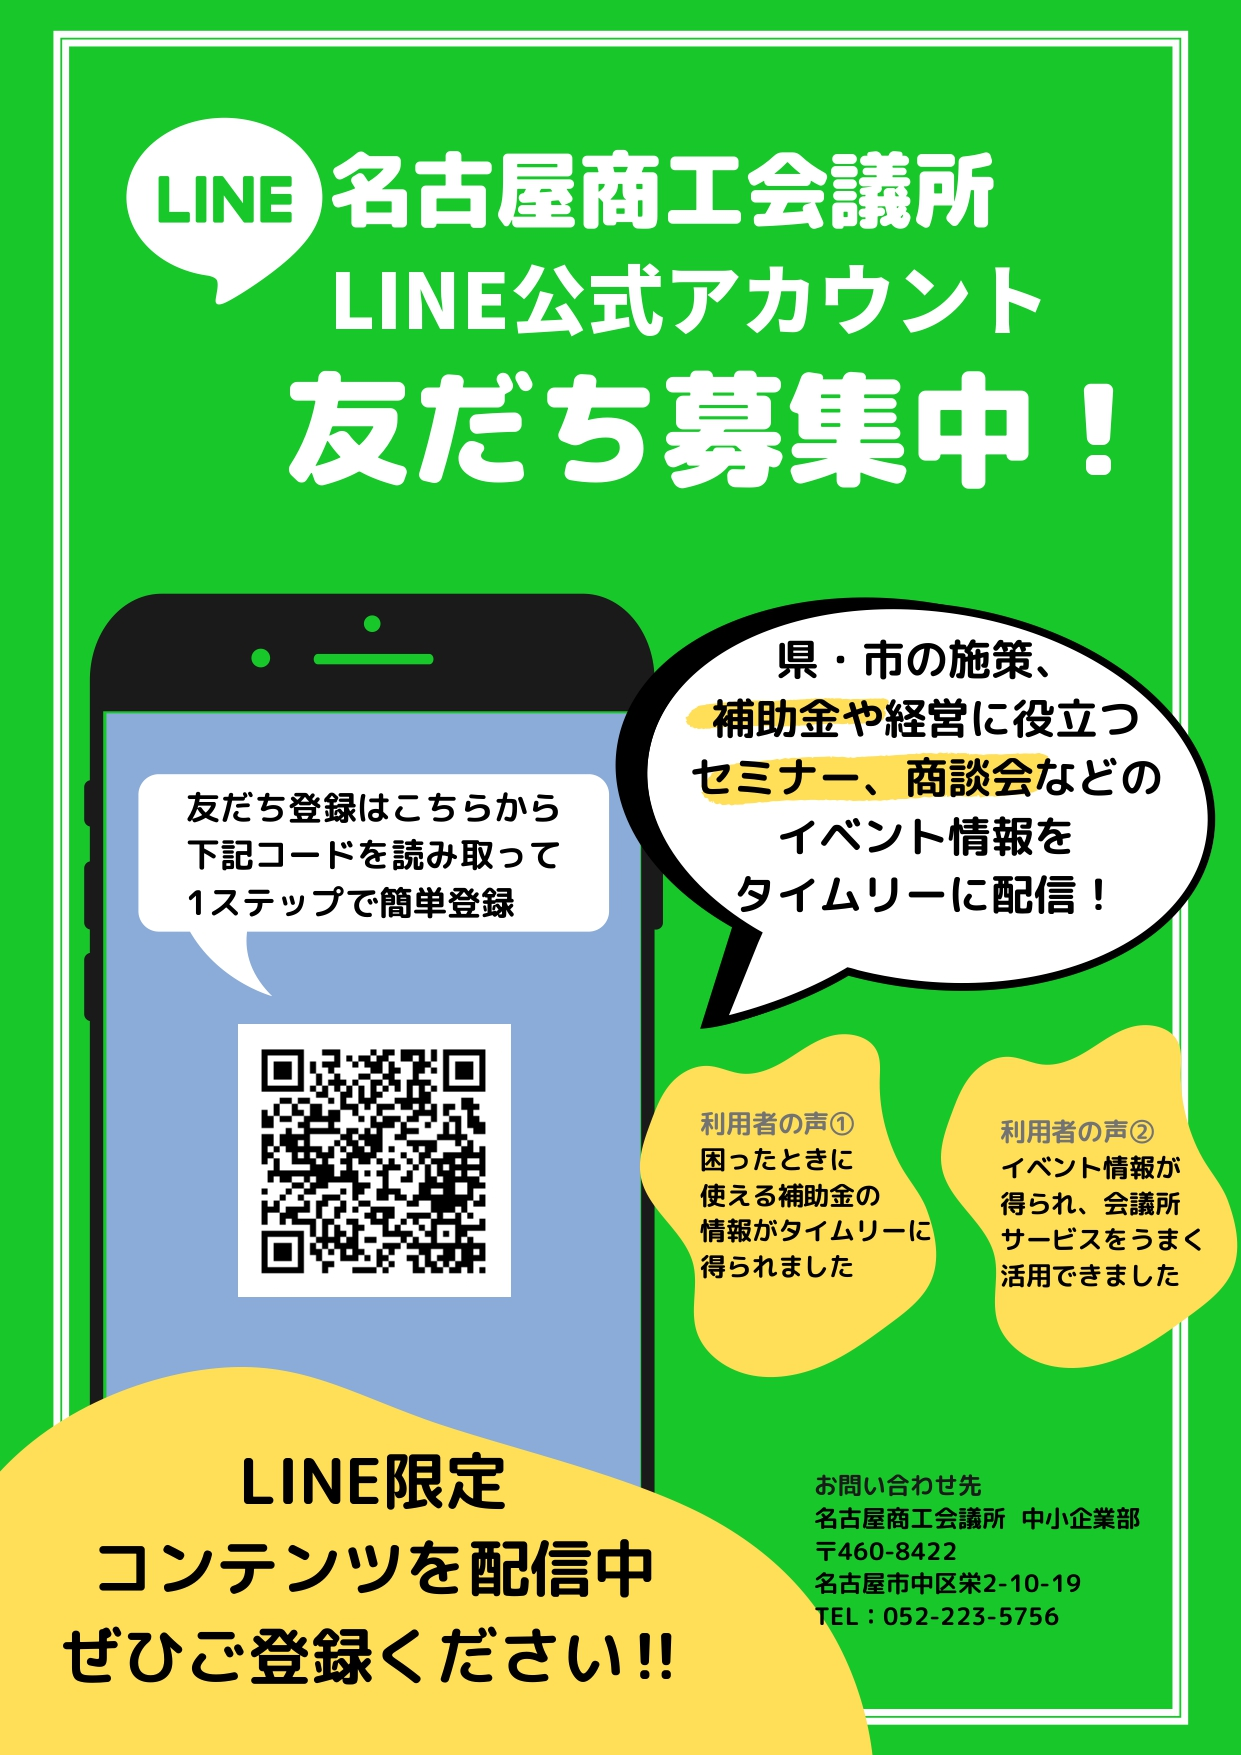 LINE_pamphlet